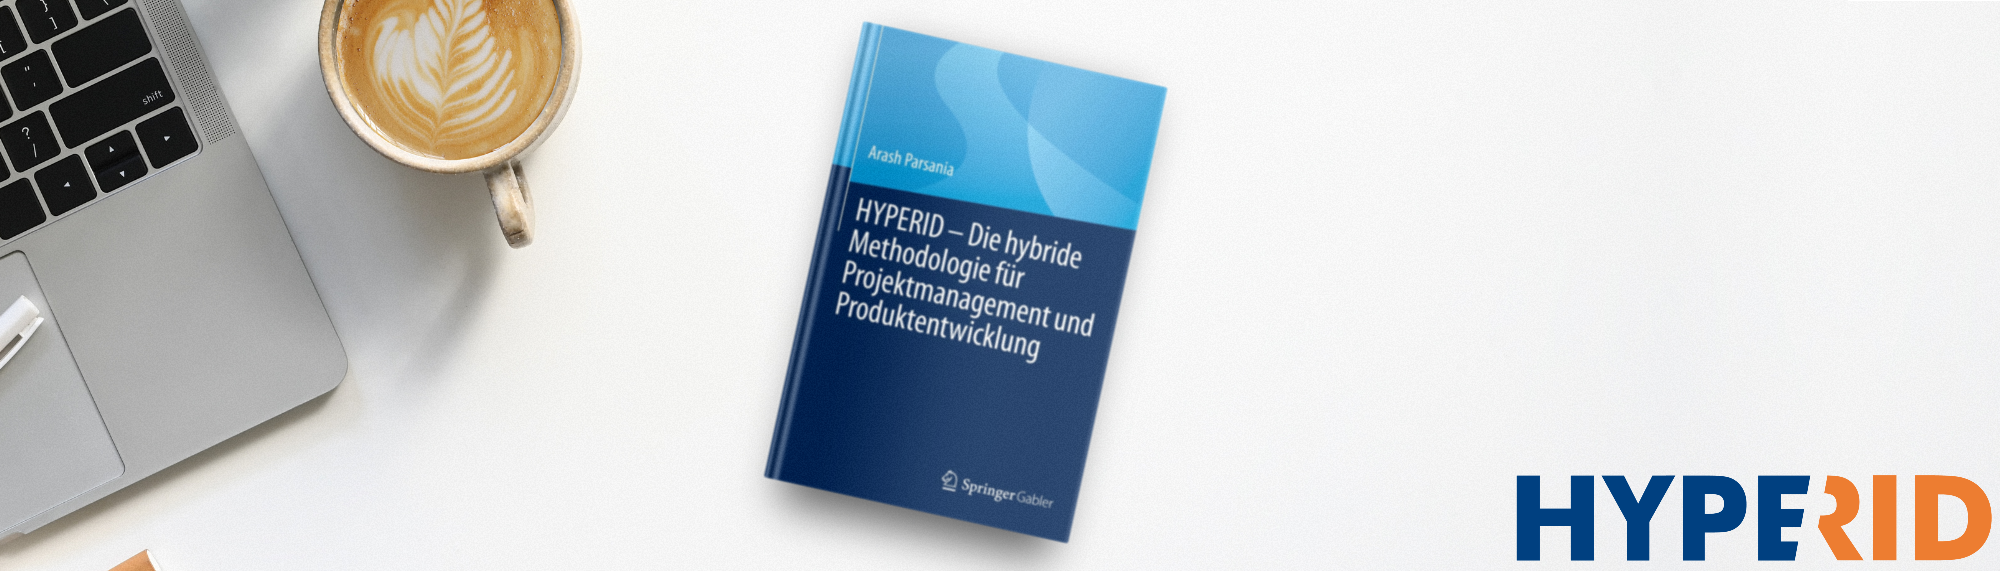 HYPERID: eine neue hybride Methodologie | IAPM